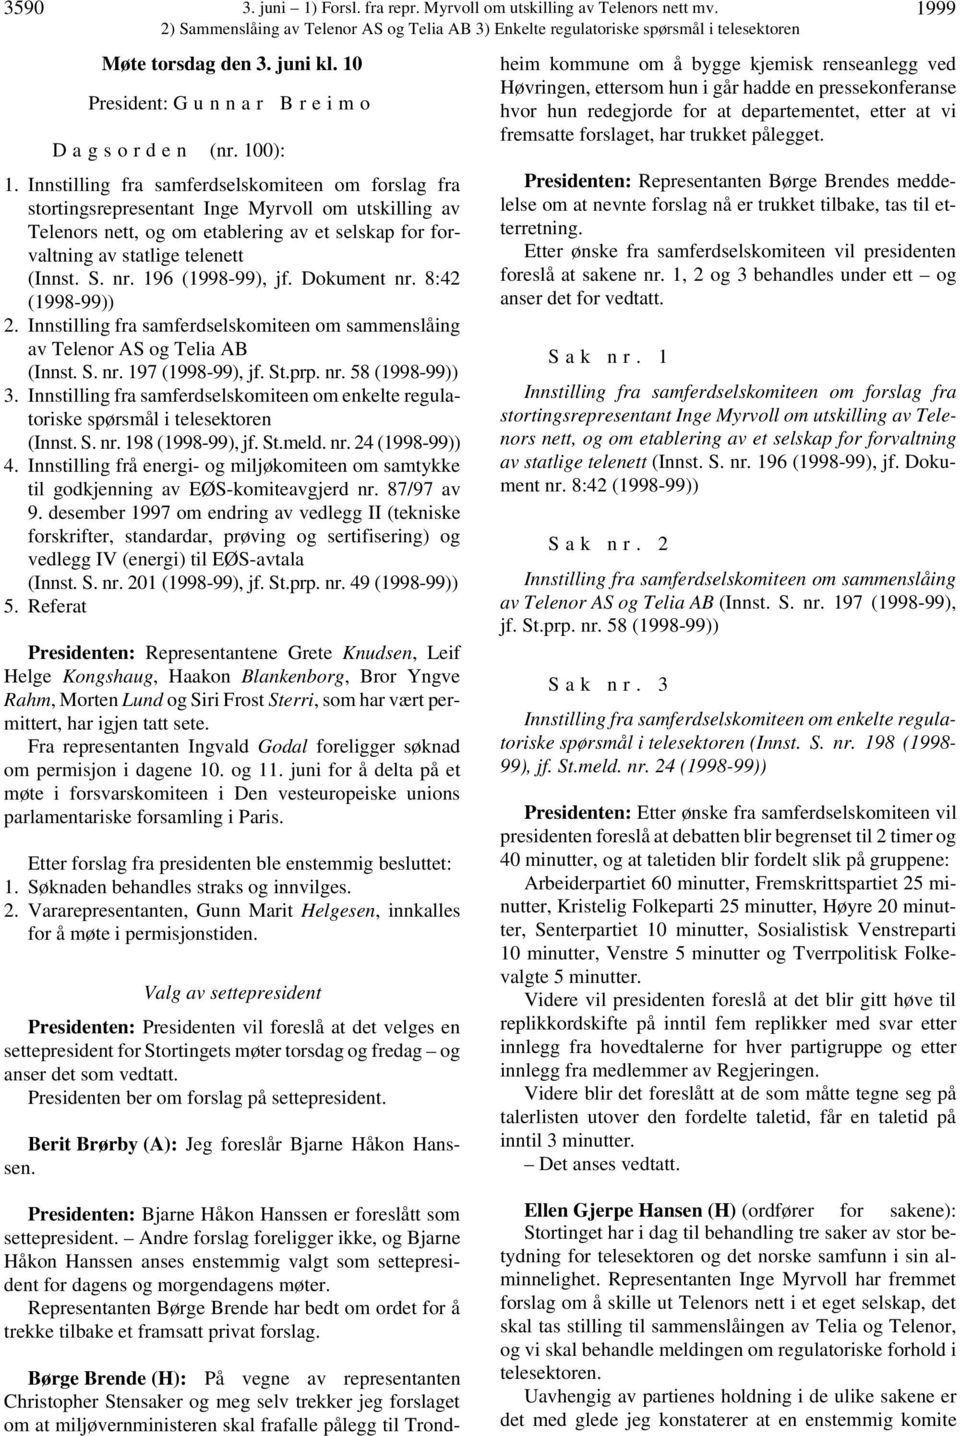 196 (1998-99), jf. Dokument nr. 8:42 (1998-99)) 2. Innstilling fra samferdselskomiteen om sammenslåing av Telenor AS og Telia AB (Innst. S. nr. 197 (1998-99), jf. St.prp. nr. 58 (1998-99)) 3.